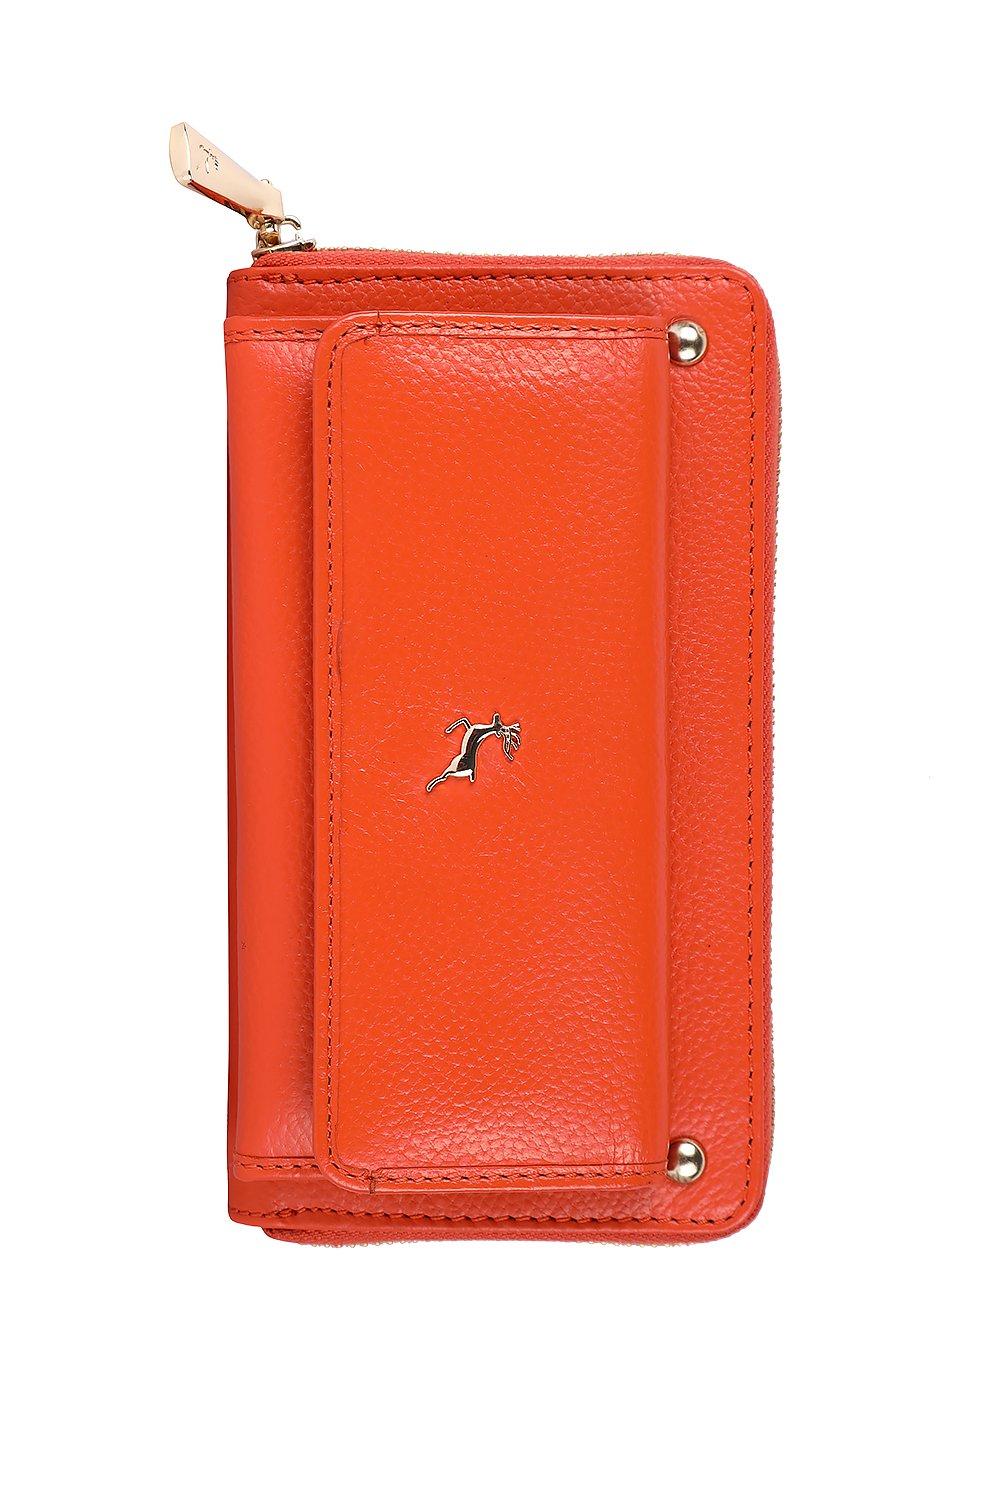 кошелек натуральная кожа на кнопках на молнии коричневый Большая кожаная сумочка для утреннего отдыха 'Dempsey' Ashwood Leather, оранжевый